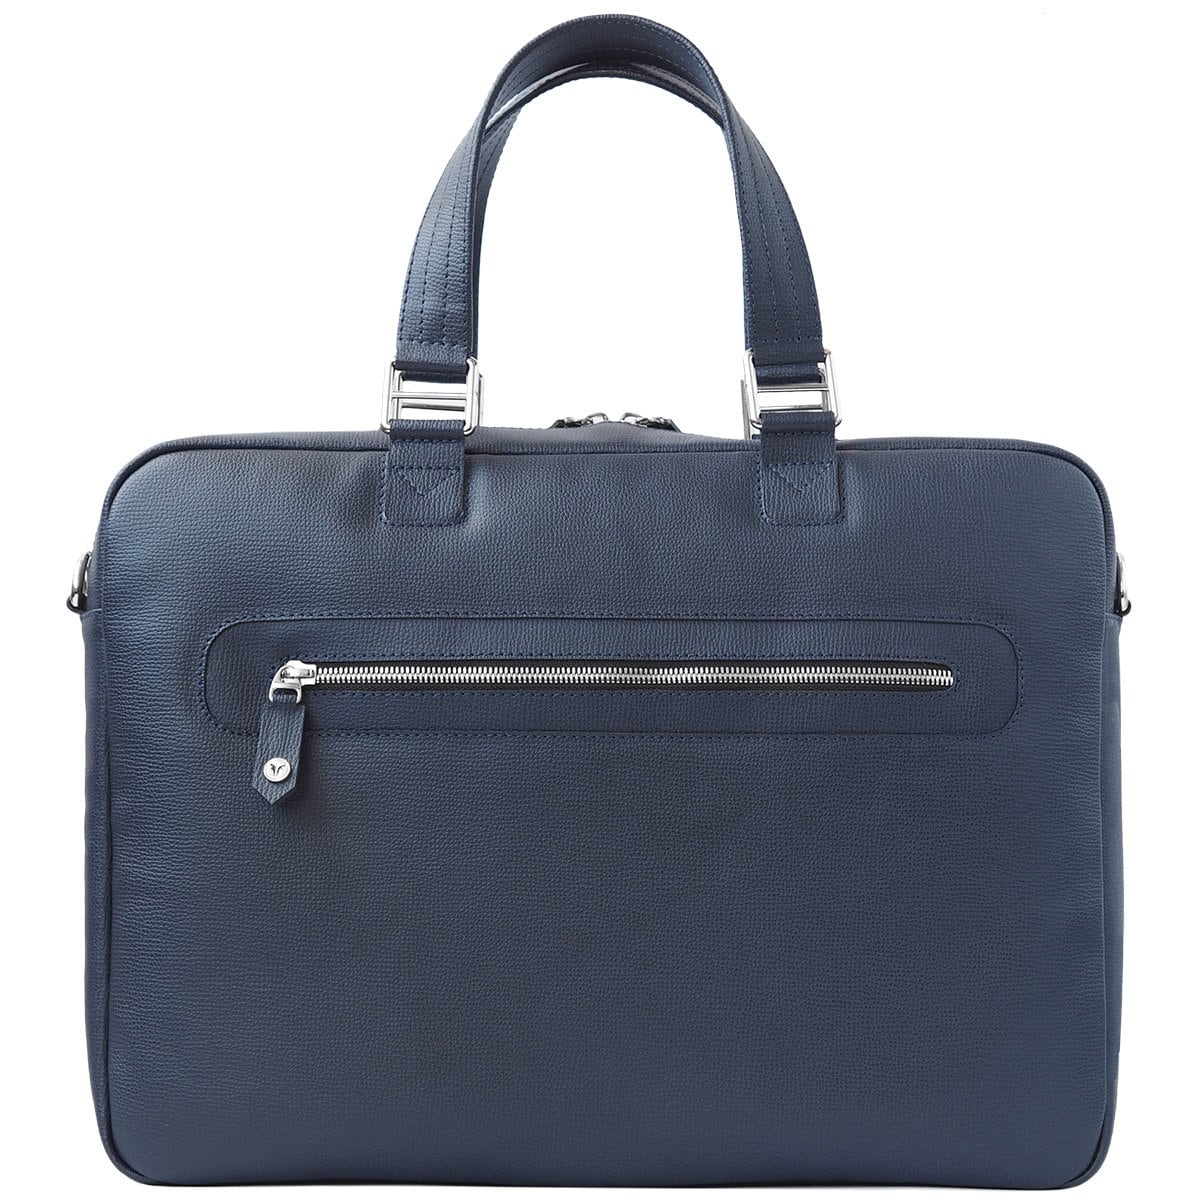 Leather Laptop Bag Men's COMPANION Unique Handbags | Etsy